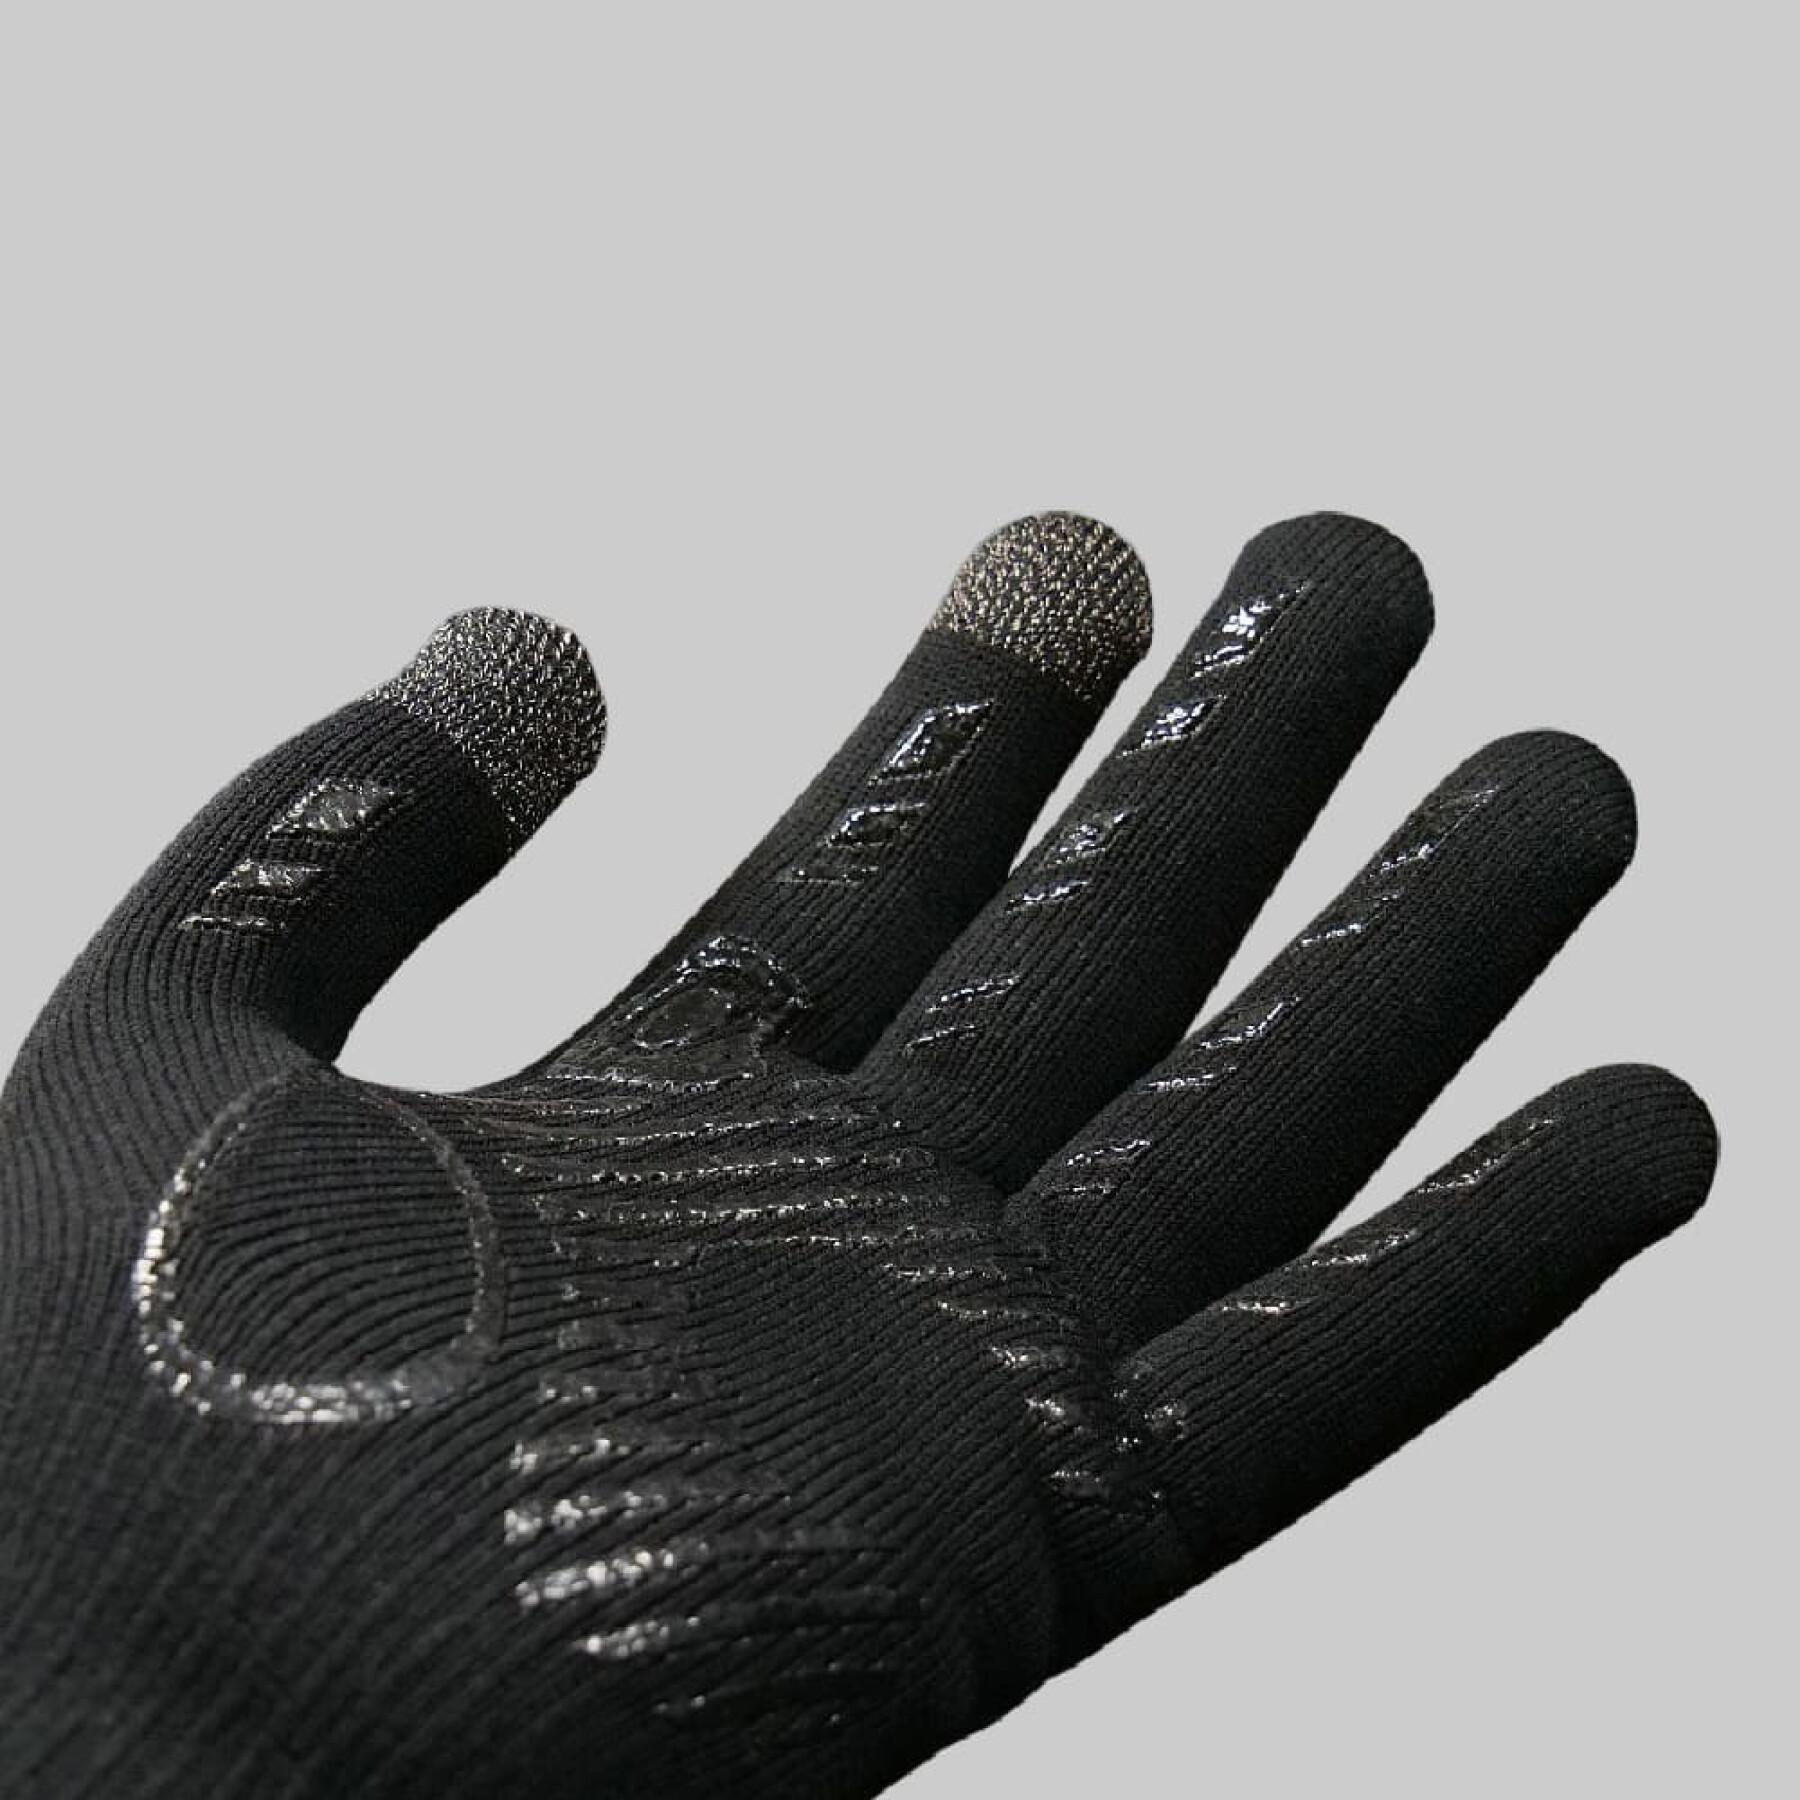 Handschuhe Verjari Claw